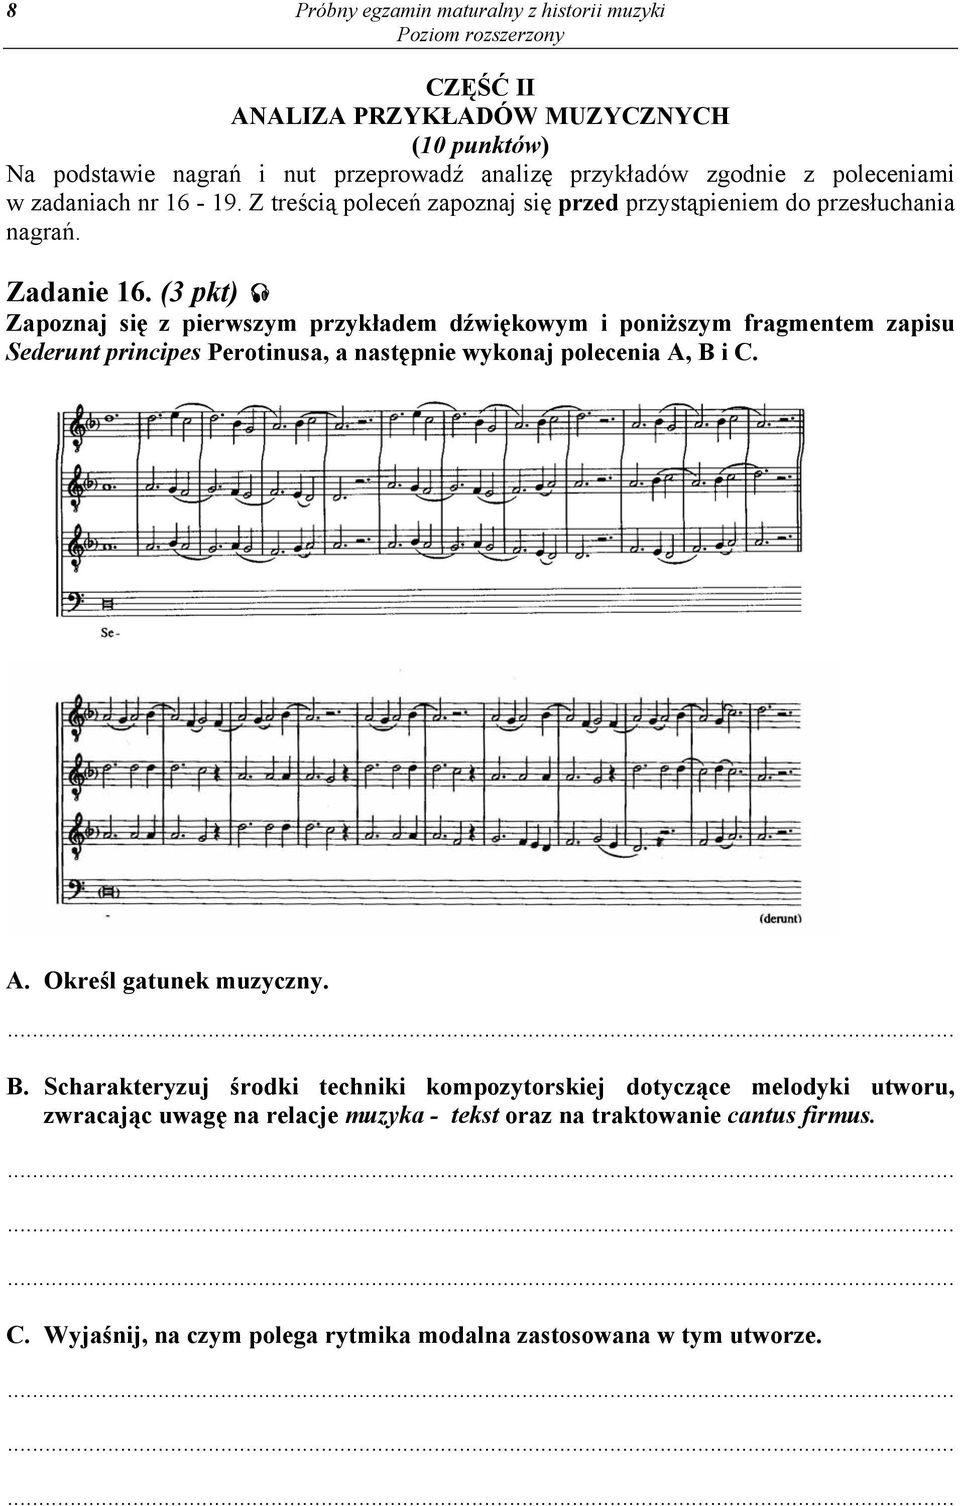 (3 pkt) Zapoznaj się z pierwszym przykładem dźwiękowym i poniższym fragmentem zapisu Sederunt principes Perotinusa, a następnie wykonaj polecenia A, B i C. A. Określ gatunek muzyczny.